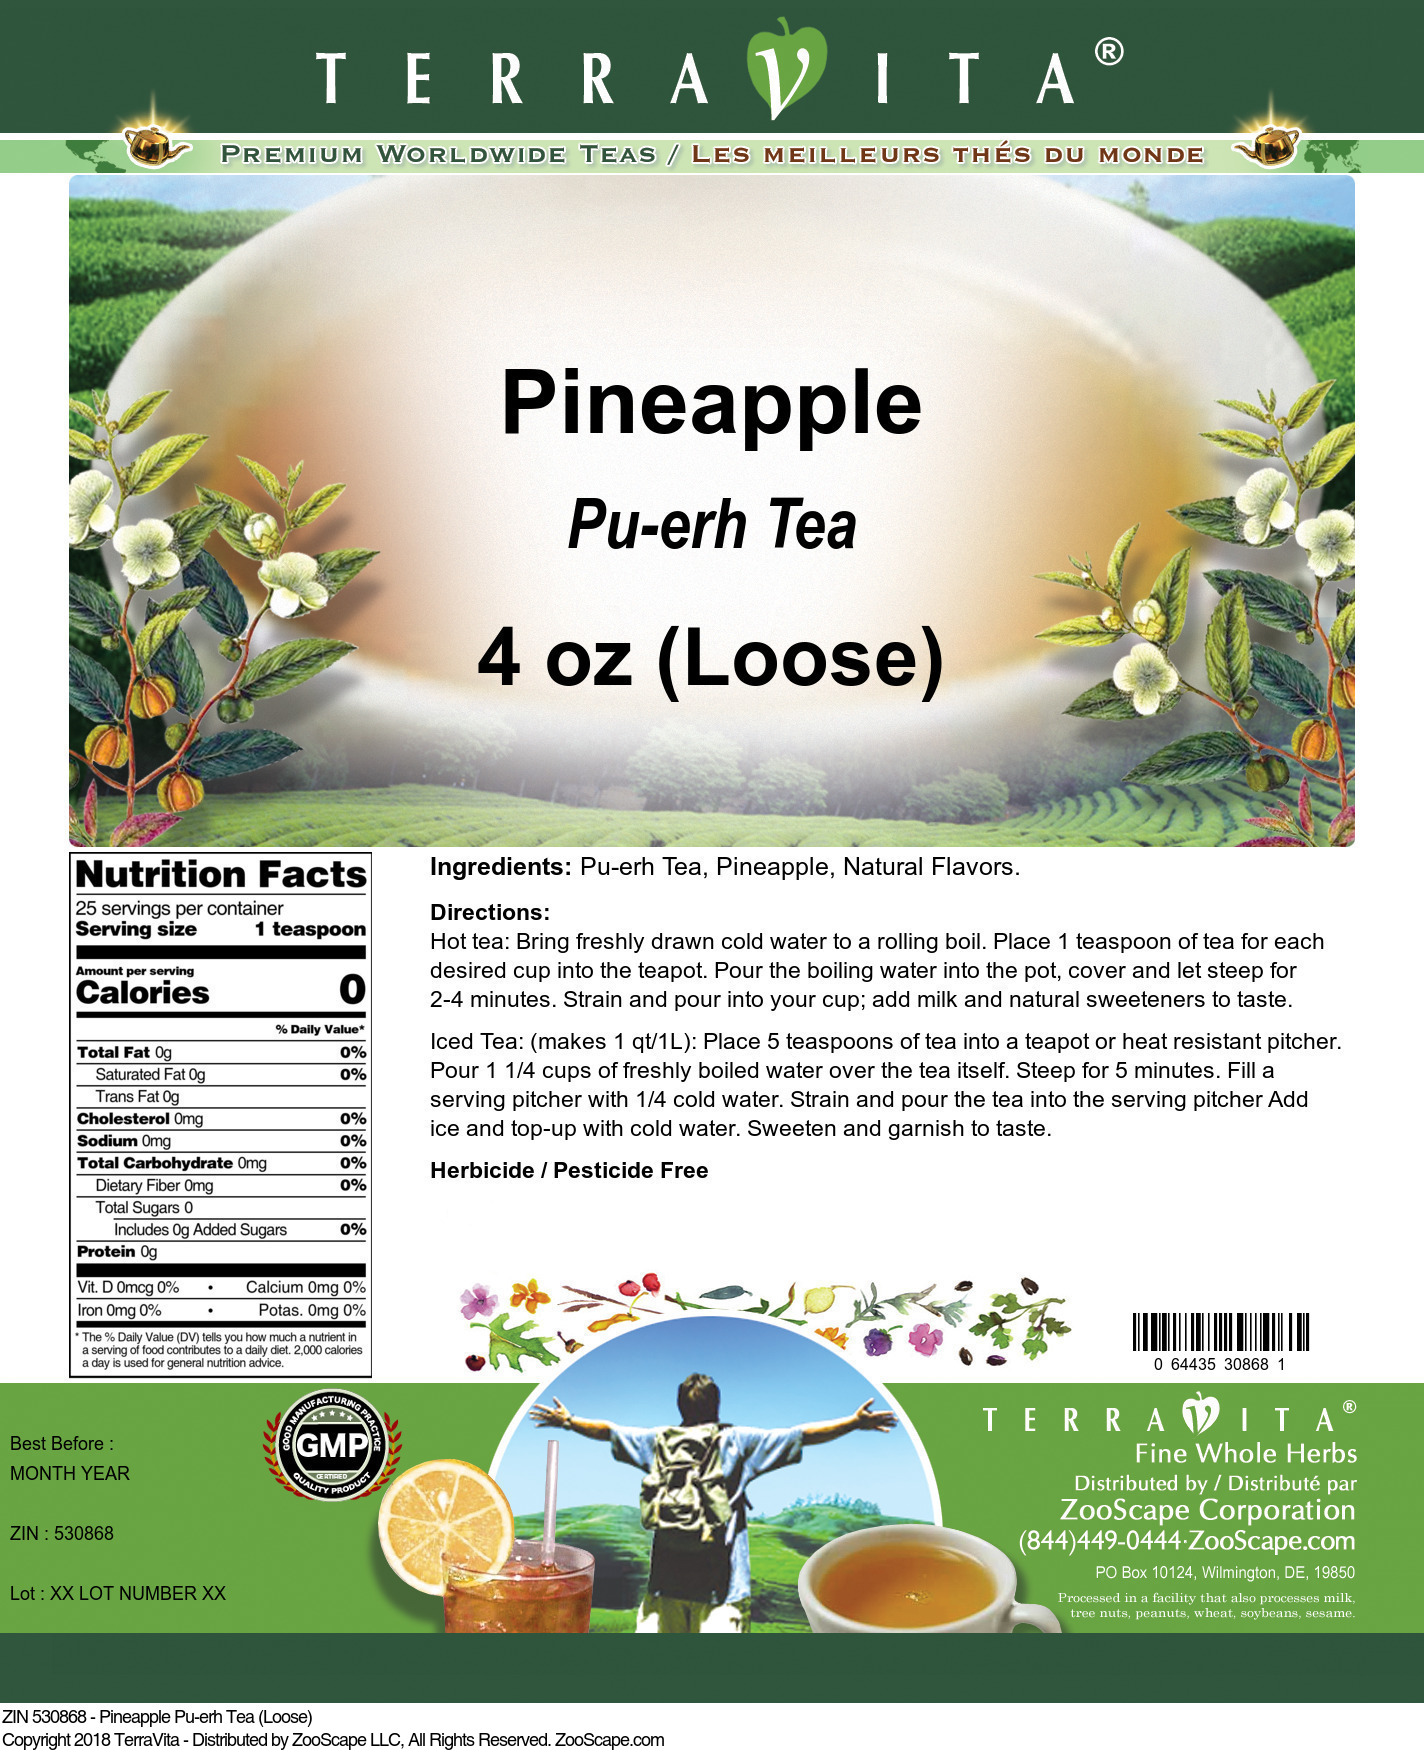 Pineapple Pu-erh Tea (Loose) - Label